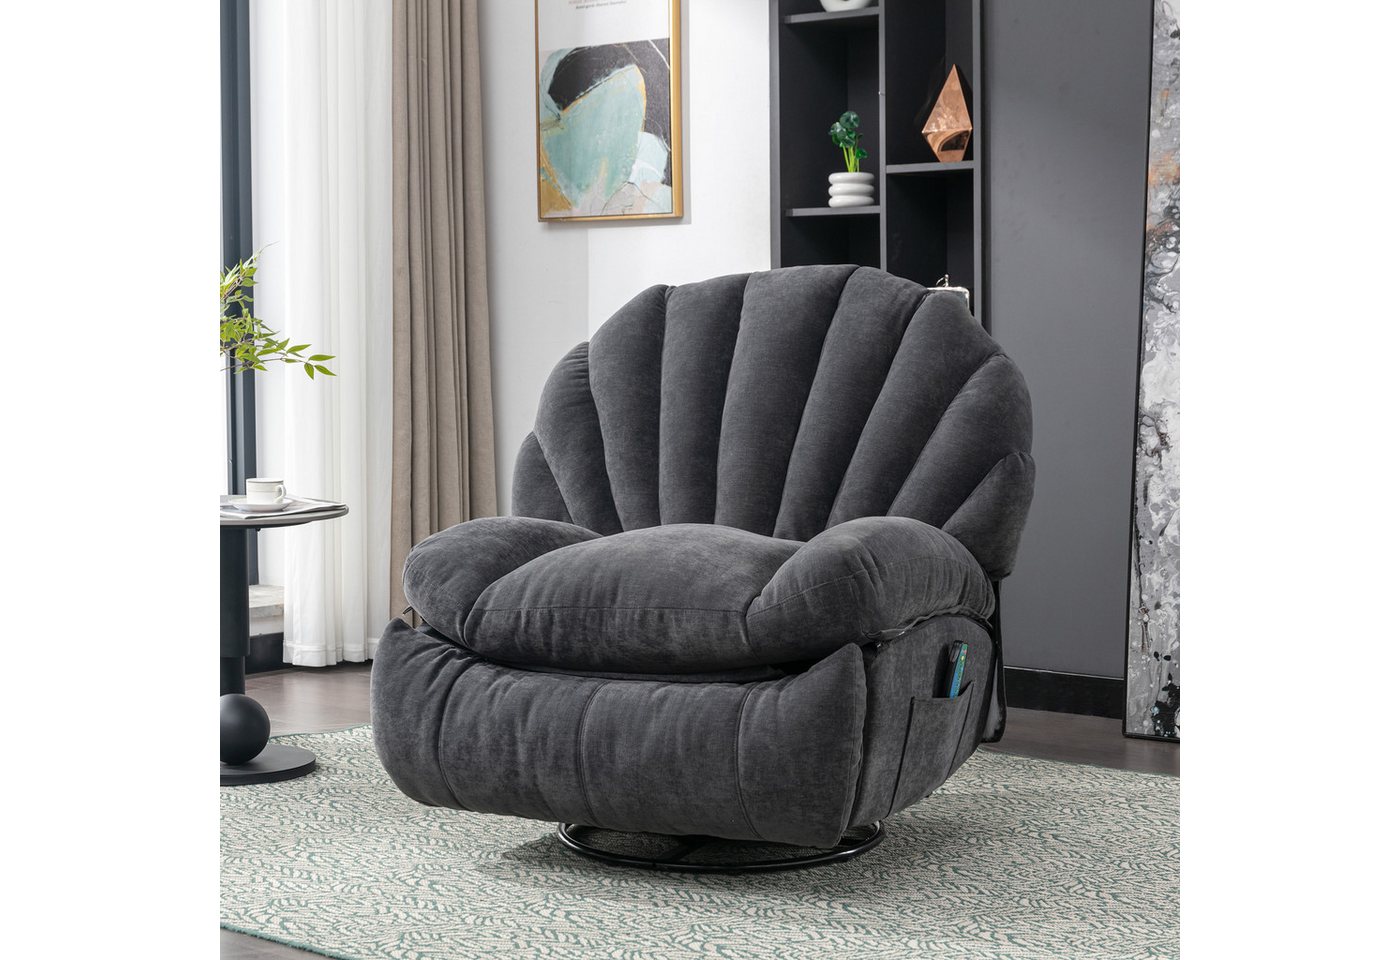 REDOM TV-Sessel Relaxsessel 360 Grad drehbar (TV-Sessel mit Wärme und Massagefunktion inkl), Massagesessel, Fernsehsessel von REDOM